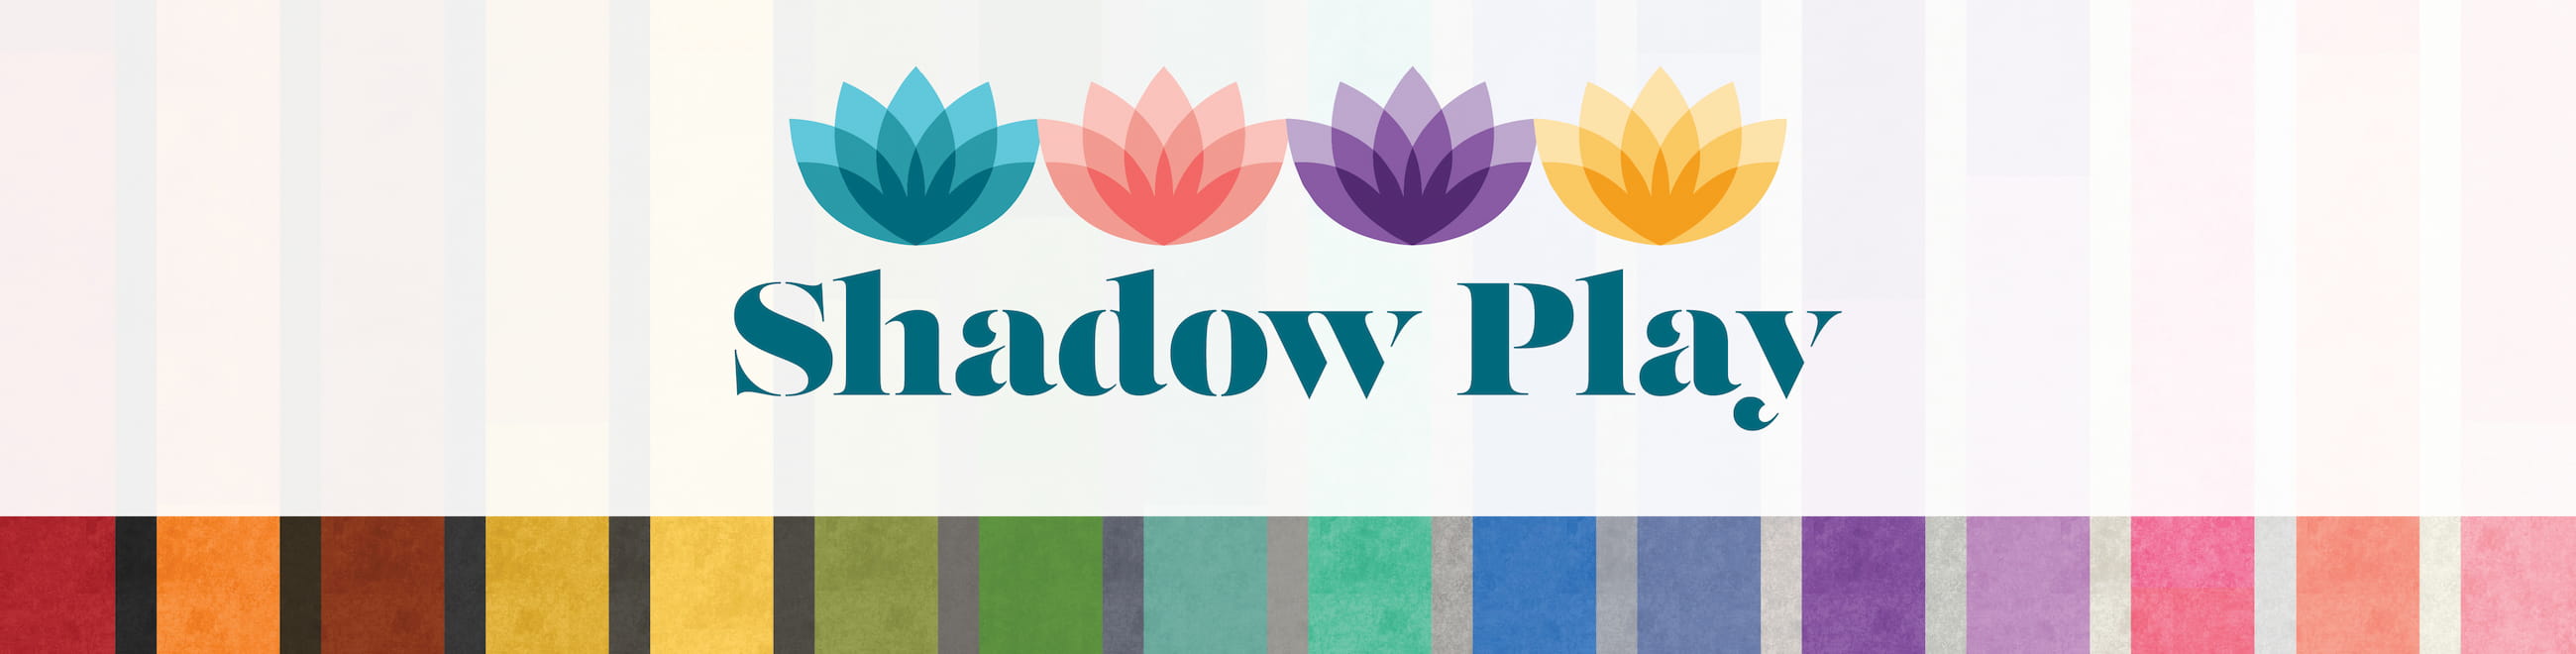 Shadow Play Blenders by Maywood Studio